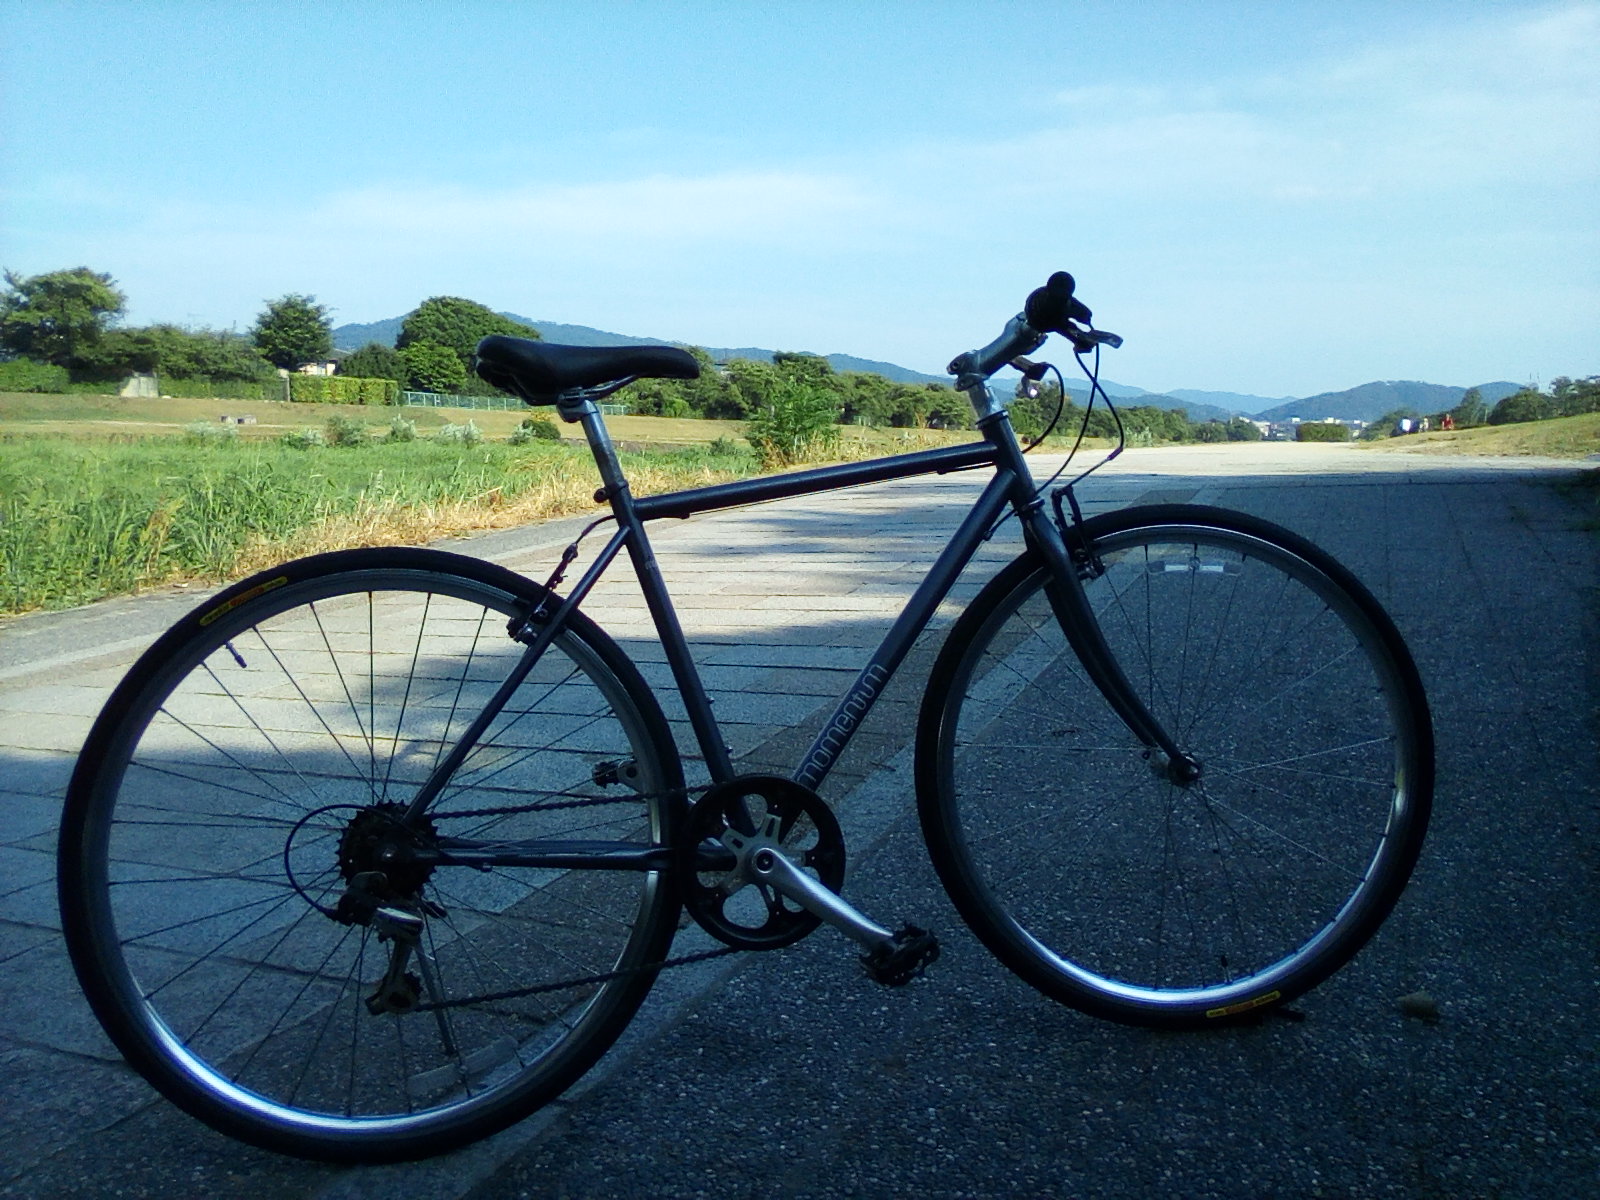 ゆったりとかっこよく走れる自転車 モーメンタム Ineed S 1 Used 京都の中古自転車 新車販売 サイクルショップ エイリン